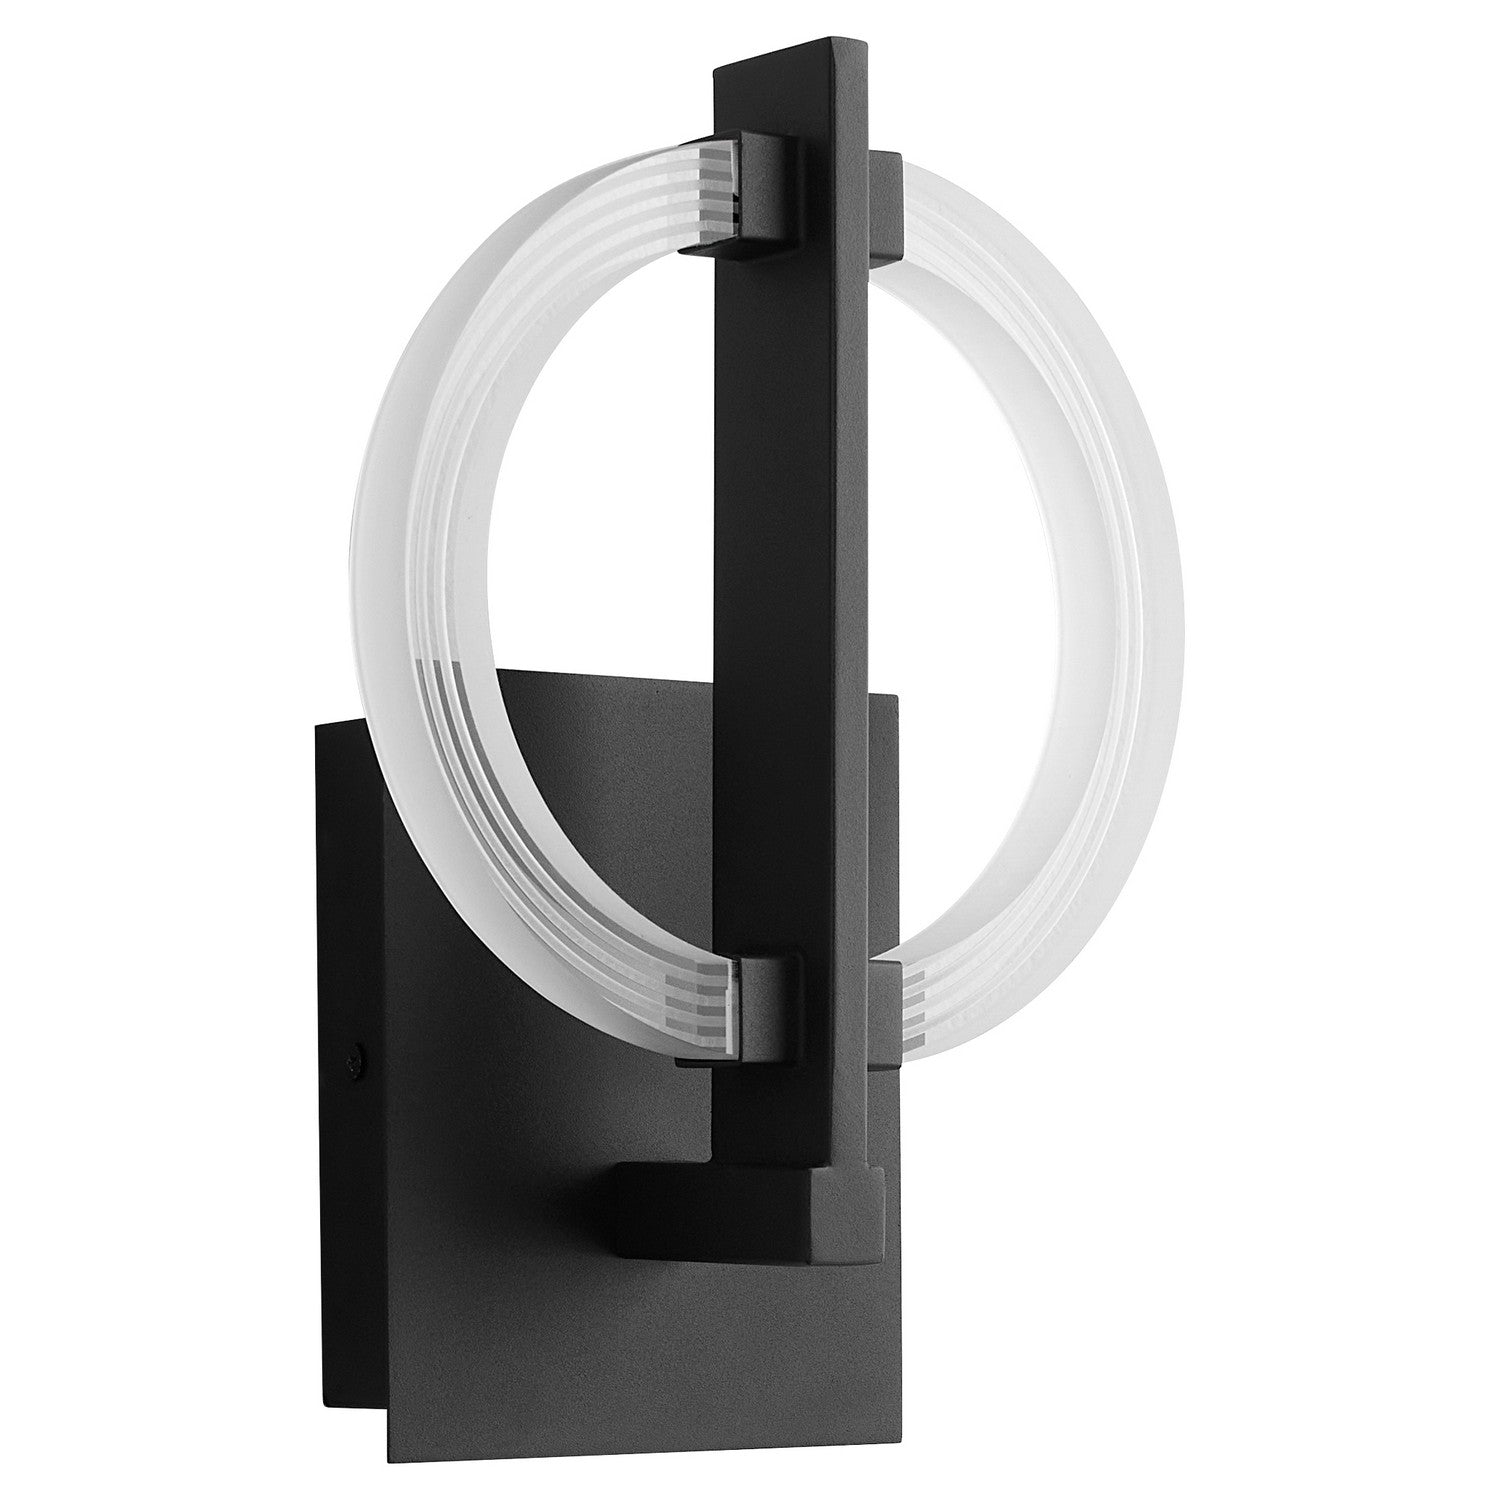 Oxygen ARENA 3-5014-15 Modern Wall Sconce Light Fixture - Black